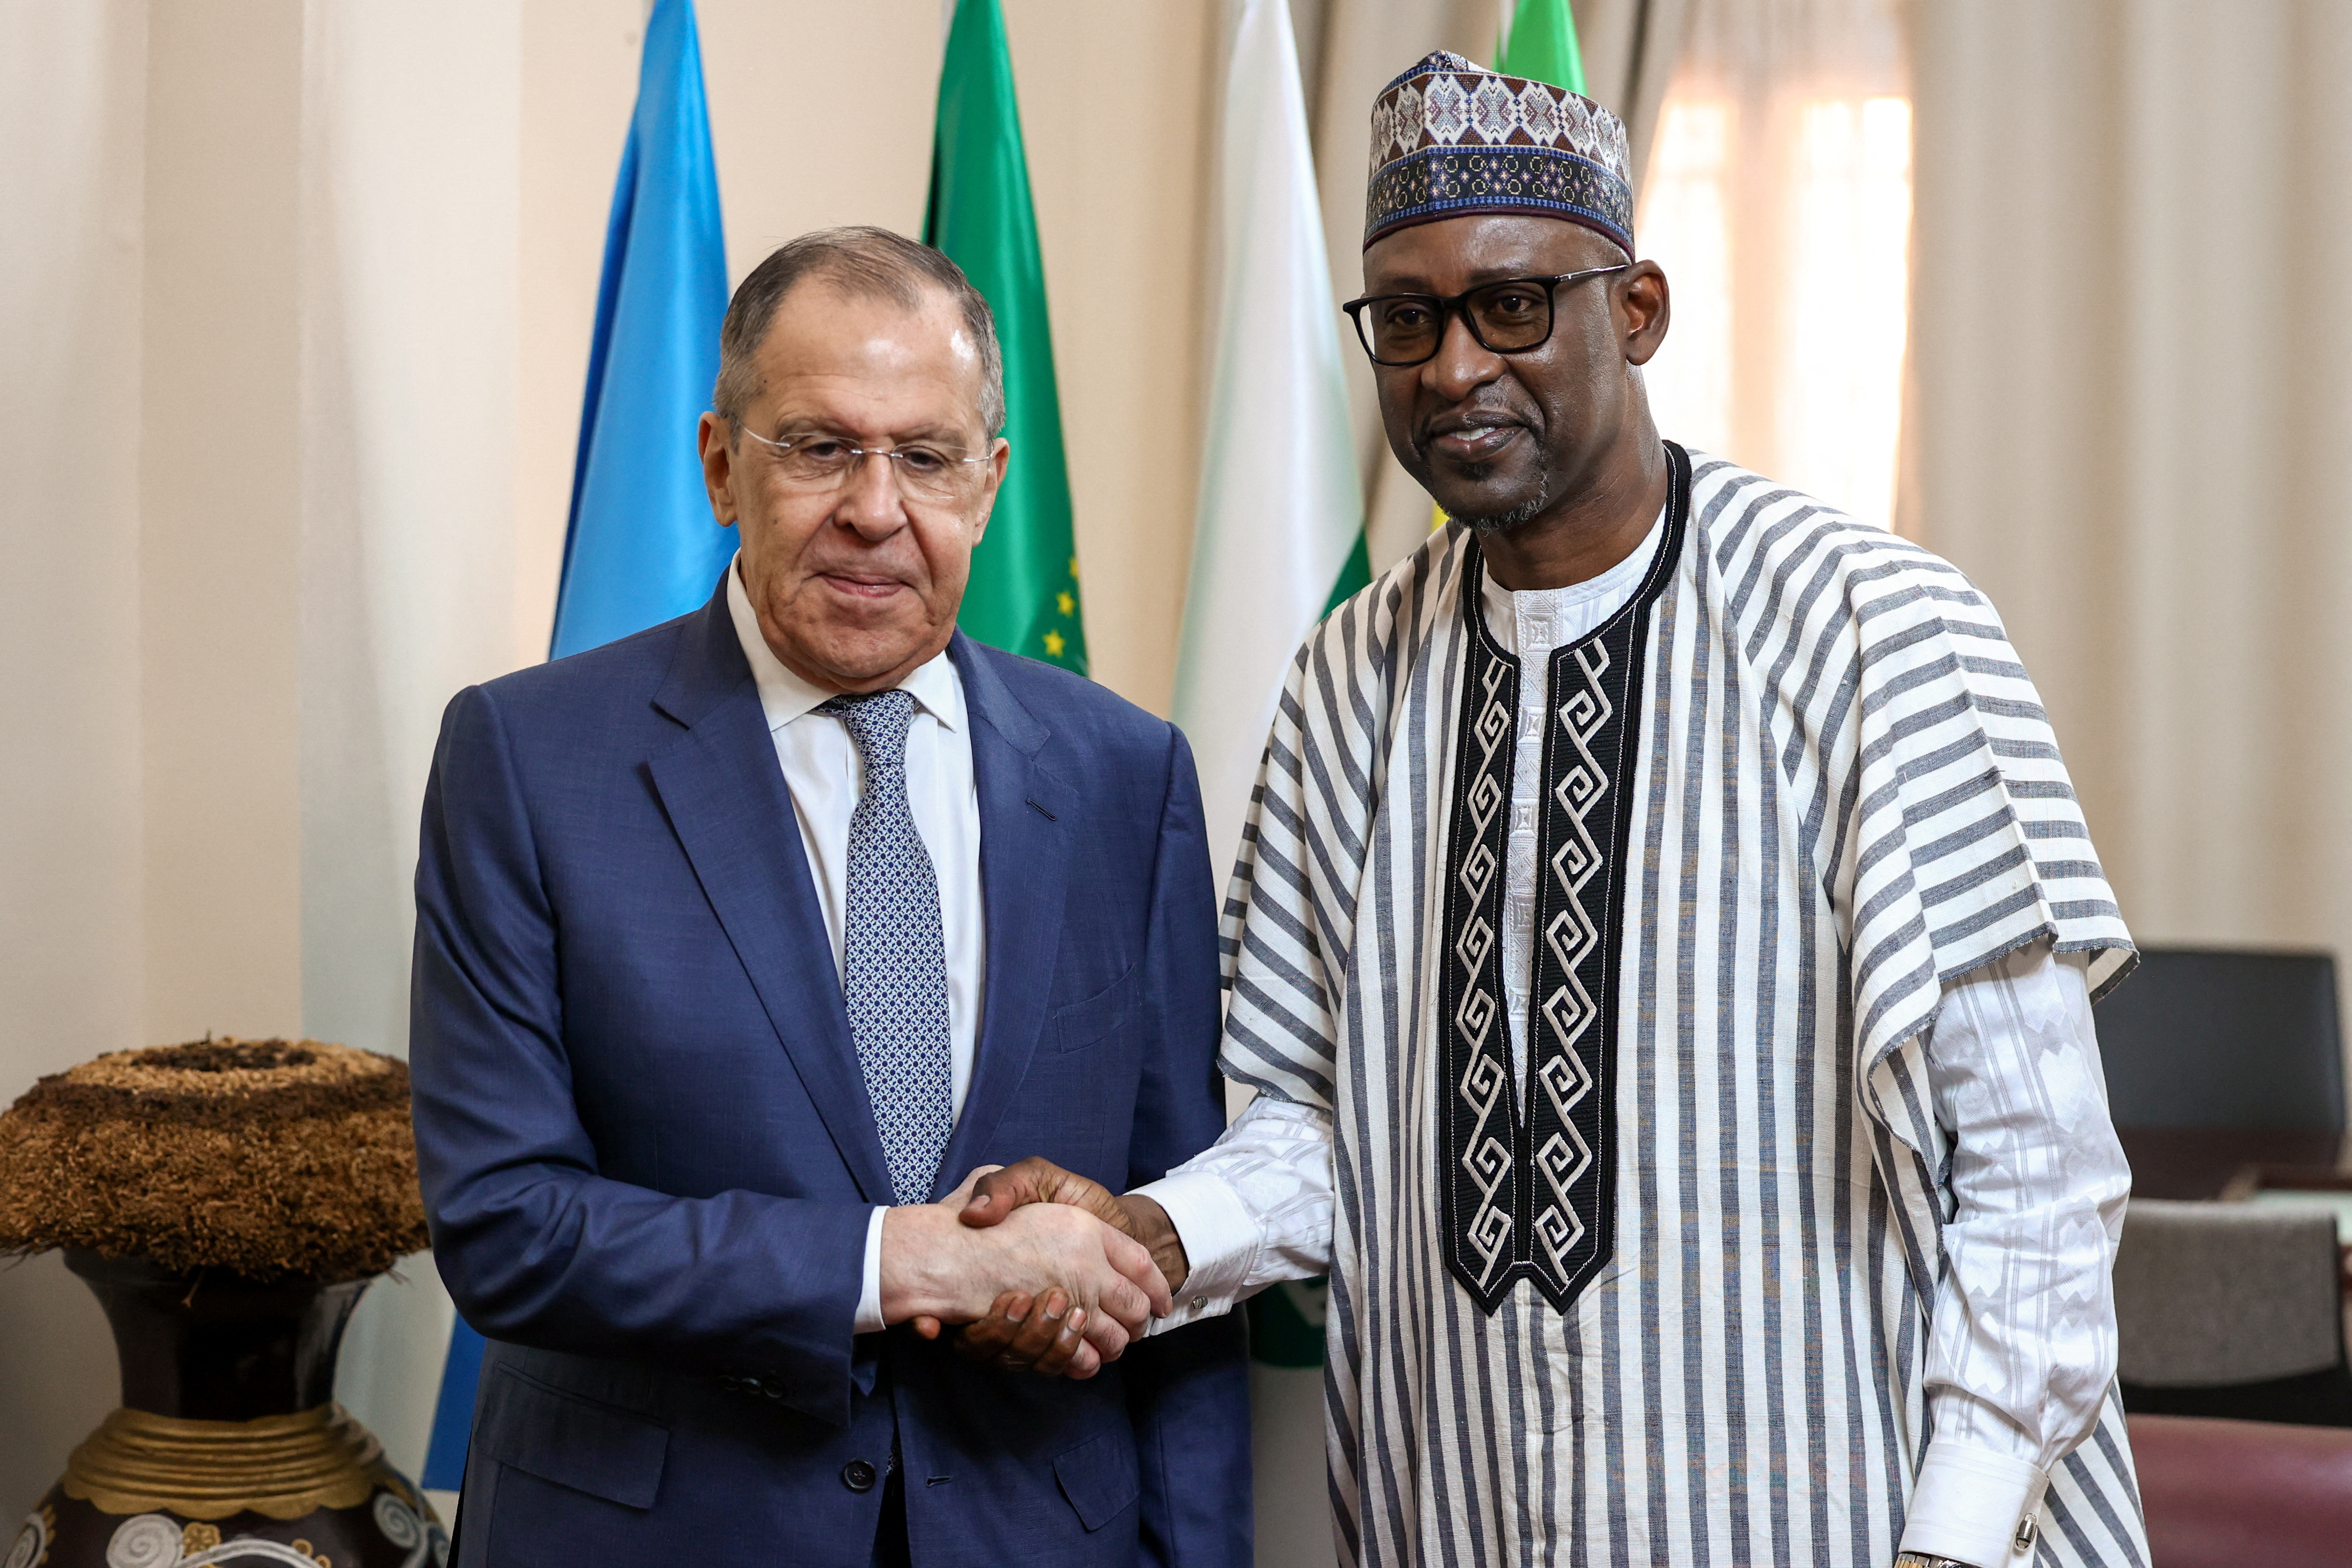 La Russie met son veto au prolongement de sanctions décidées par l'ONU contre le Mali